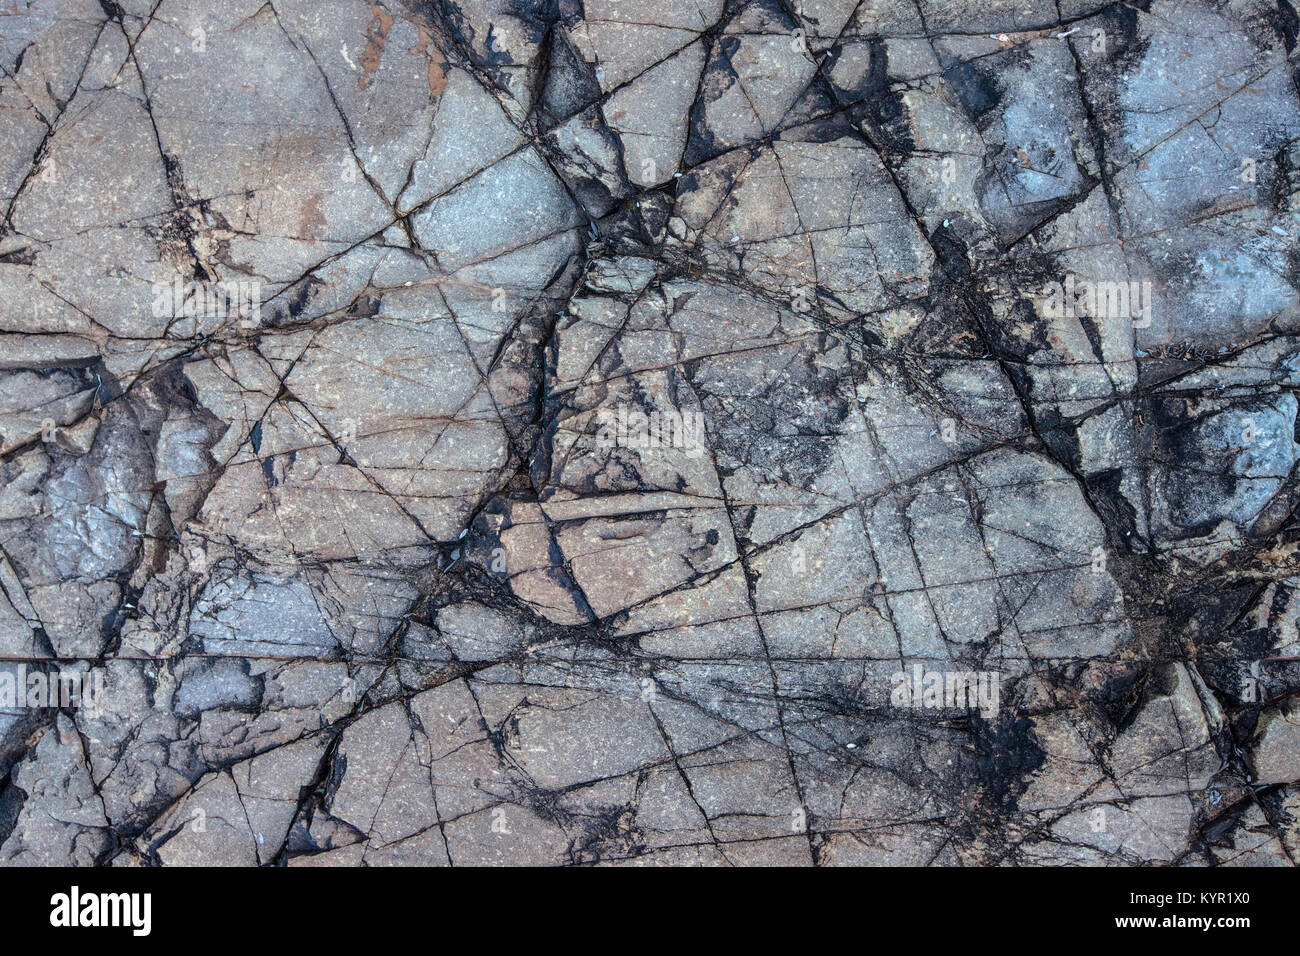 Primer plano de un piso de mar fosilizadas. Los restos de un mar poco profundo que cubría parte del sur de Arizona durante el periodo Jurásico, EE.UU. Foto de stock